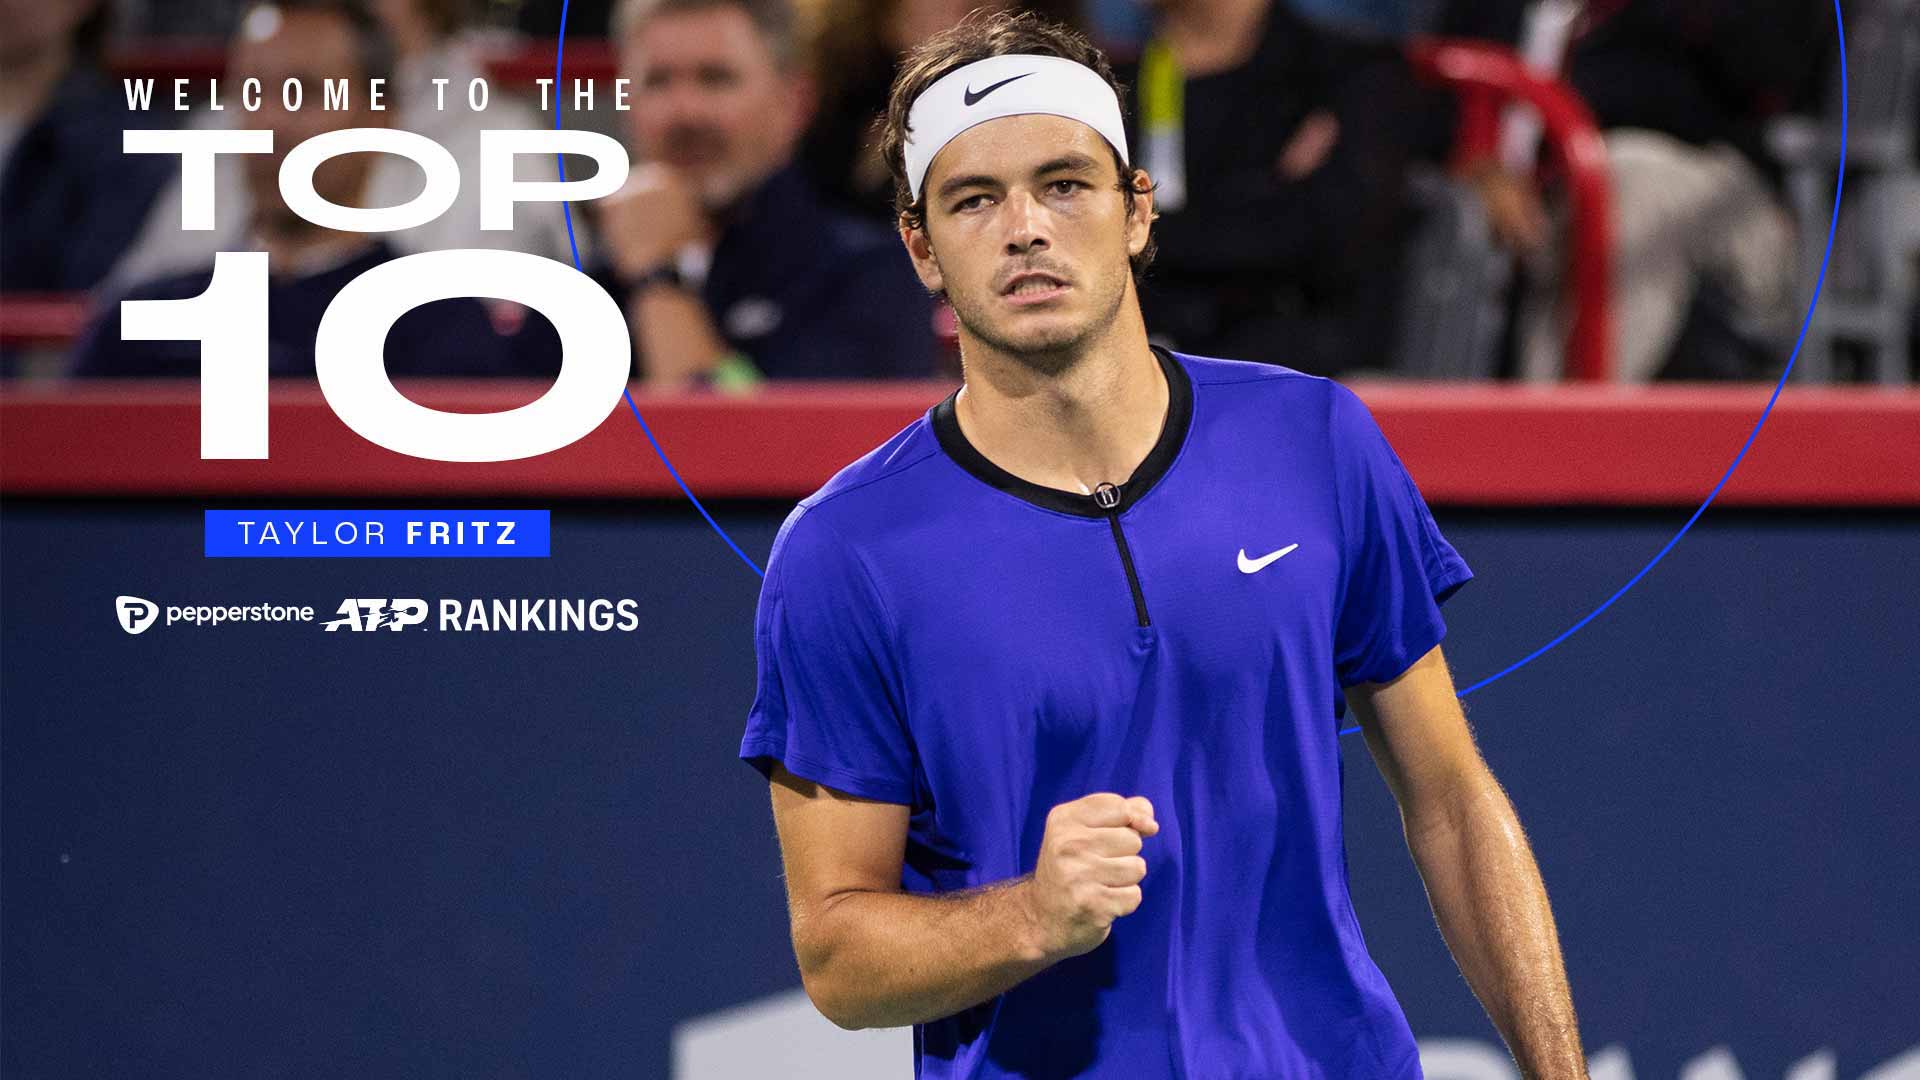 Taylor Fritz es el tercer jugador que irrumpe en el Top 10 del Pepperstone ATP Rankings en 2022.